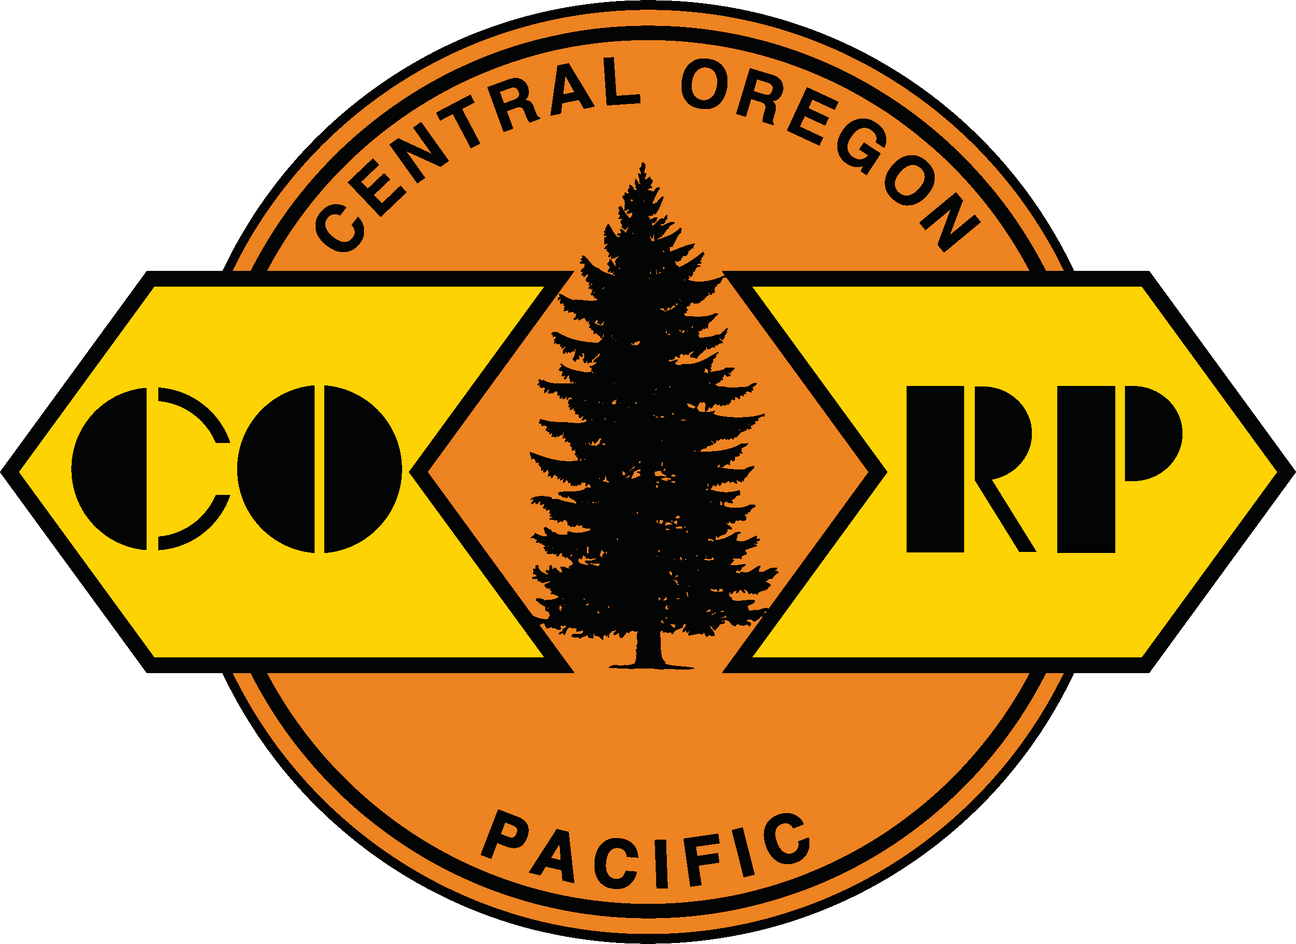 Central Oregon and Pacific Railroad